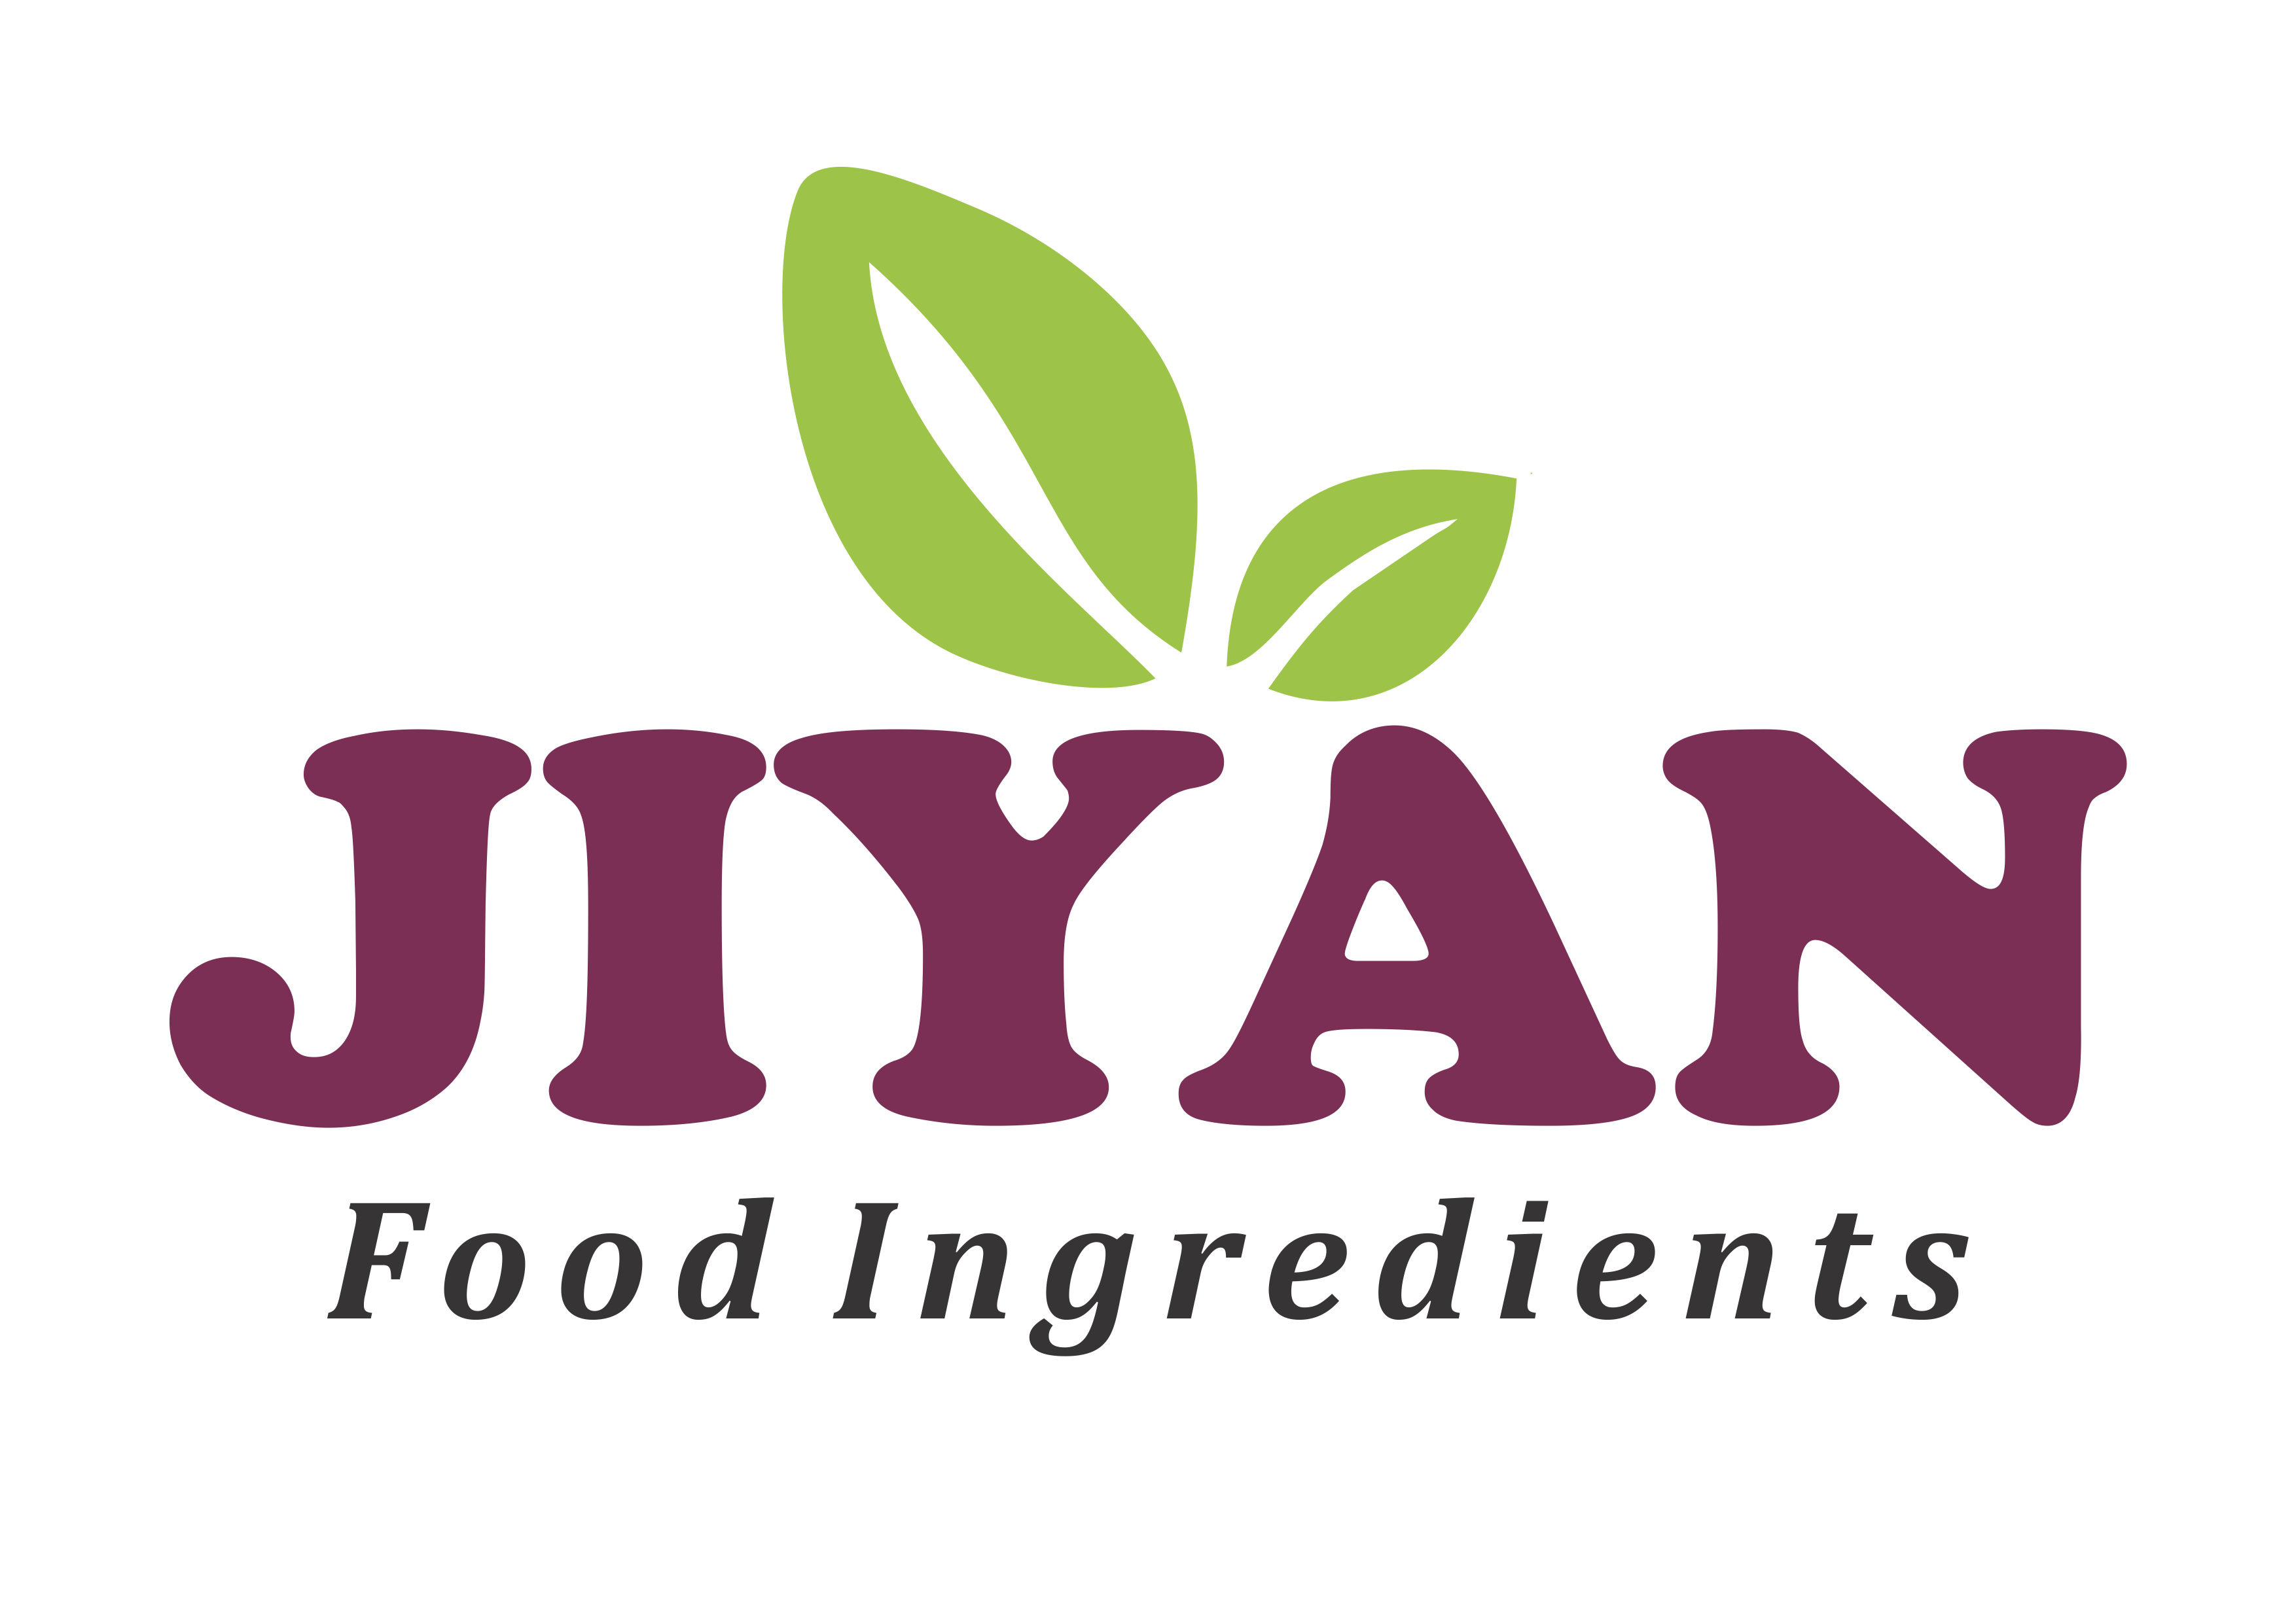 JIYAN FOOD INGREDIENTS